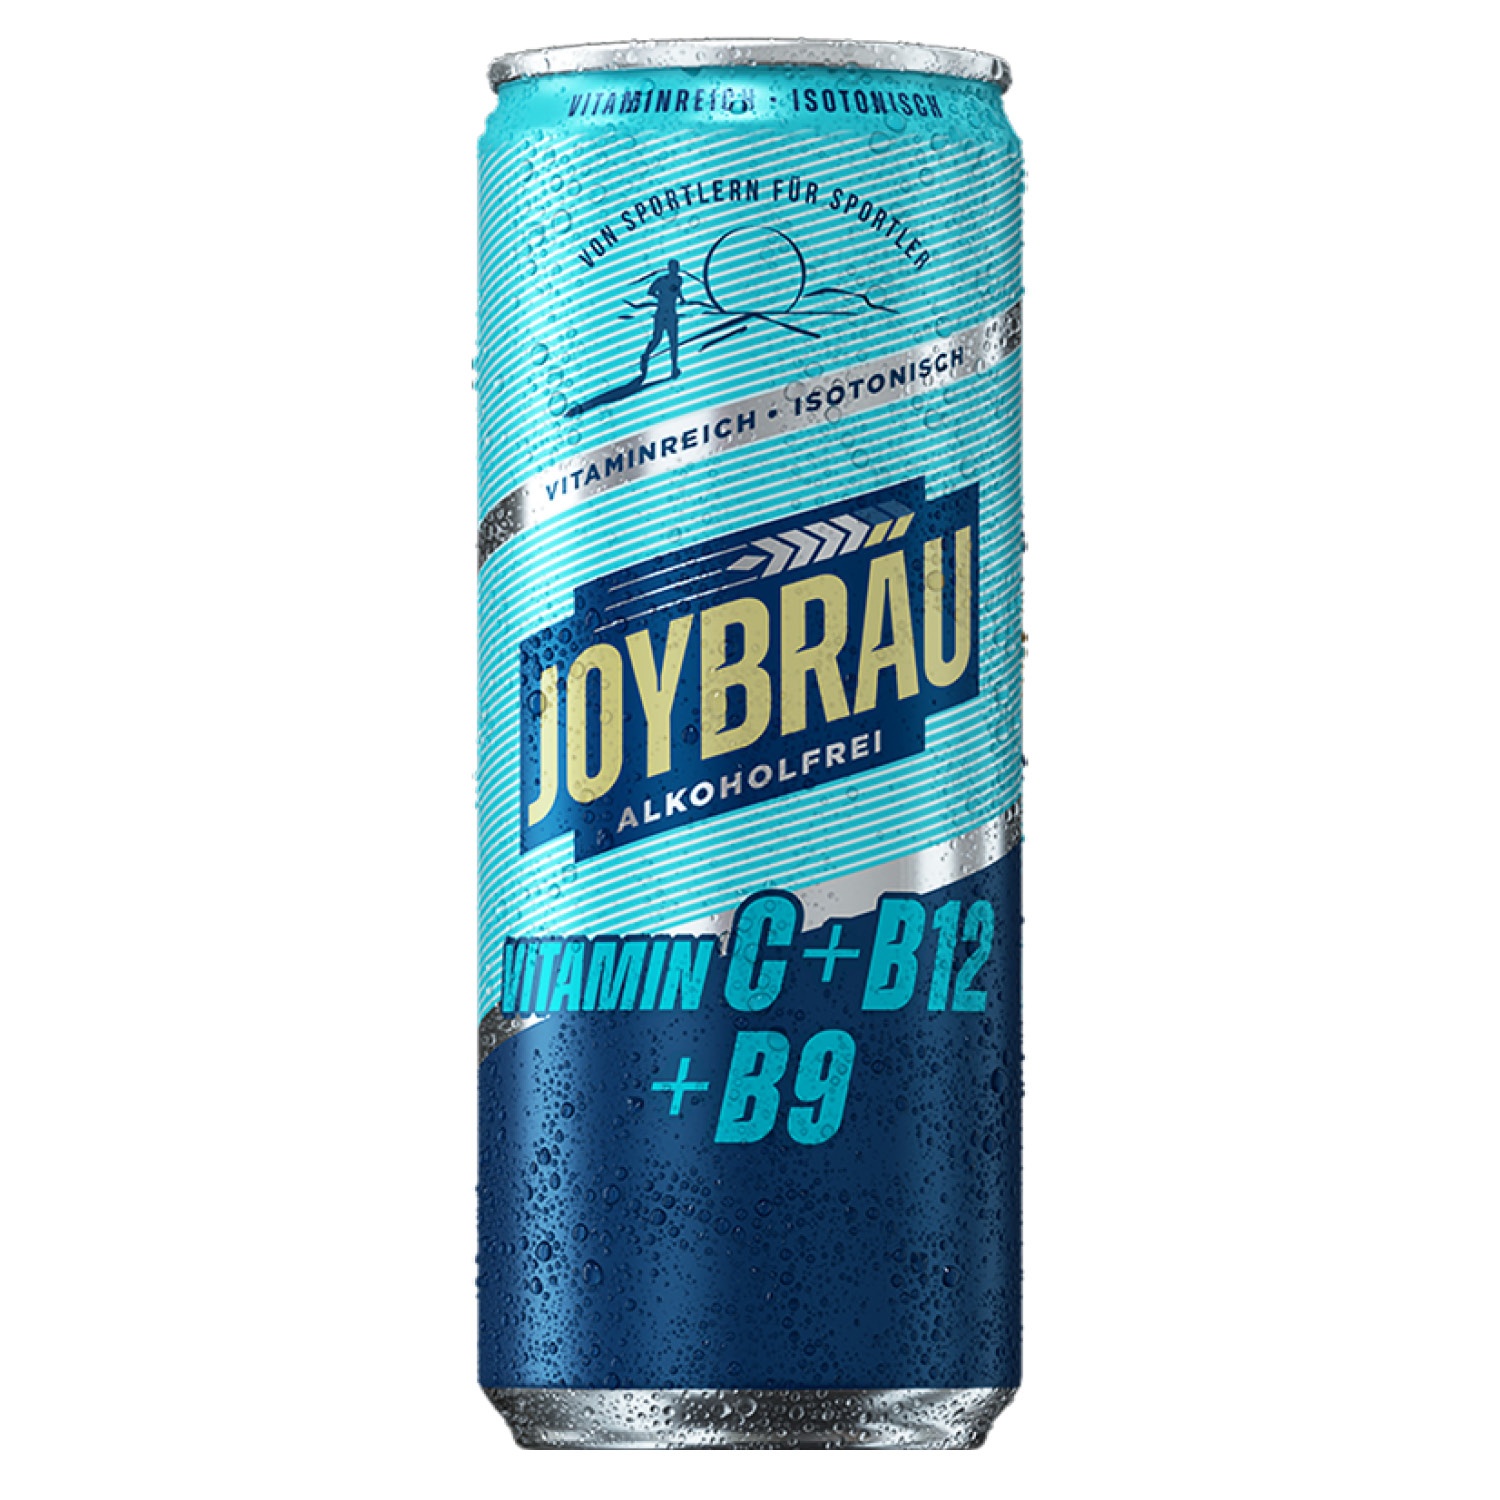 JOYBRÄU Alkoholfreies Bier/Alkoholfreies Proteinbier 0,33 l